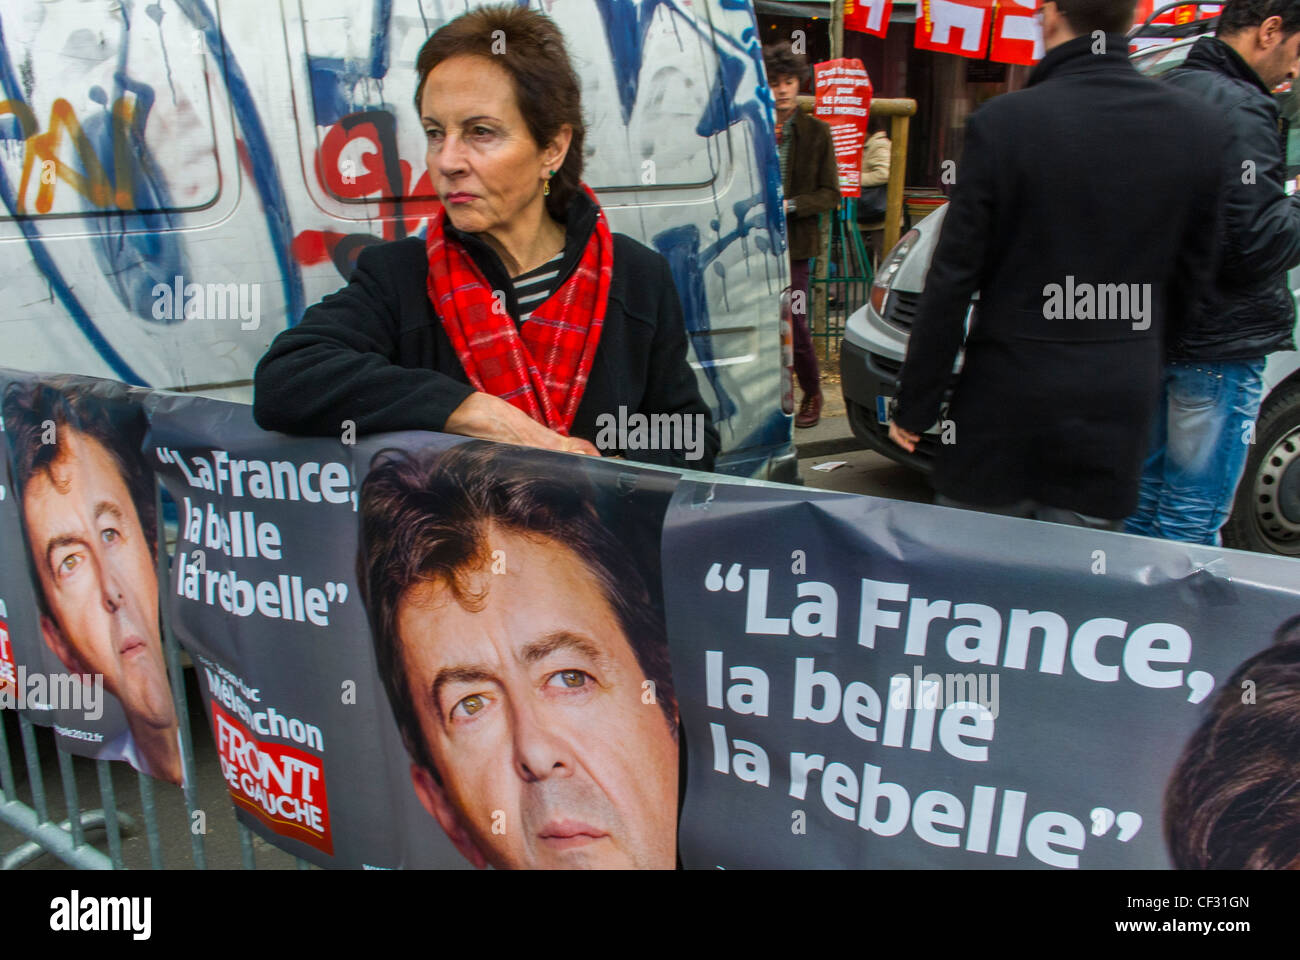 Parigi, Francia, misure antieuropee di austerità economica dimostrazione, da parte dei sindacati di sinistra, e il Partito politico, Donna in piedi vicino 'Front de Gauche' Melenchon Campaign Signs Poster Foto Stock